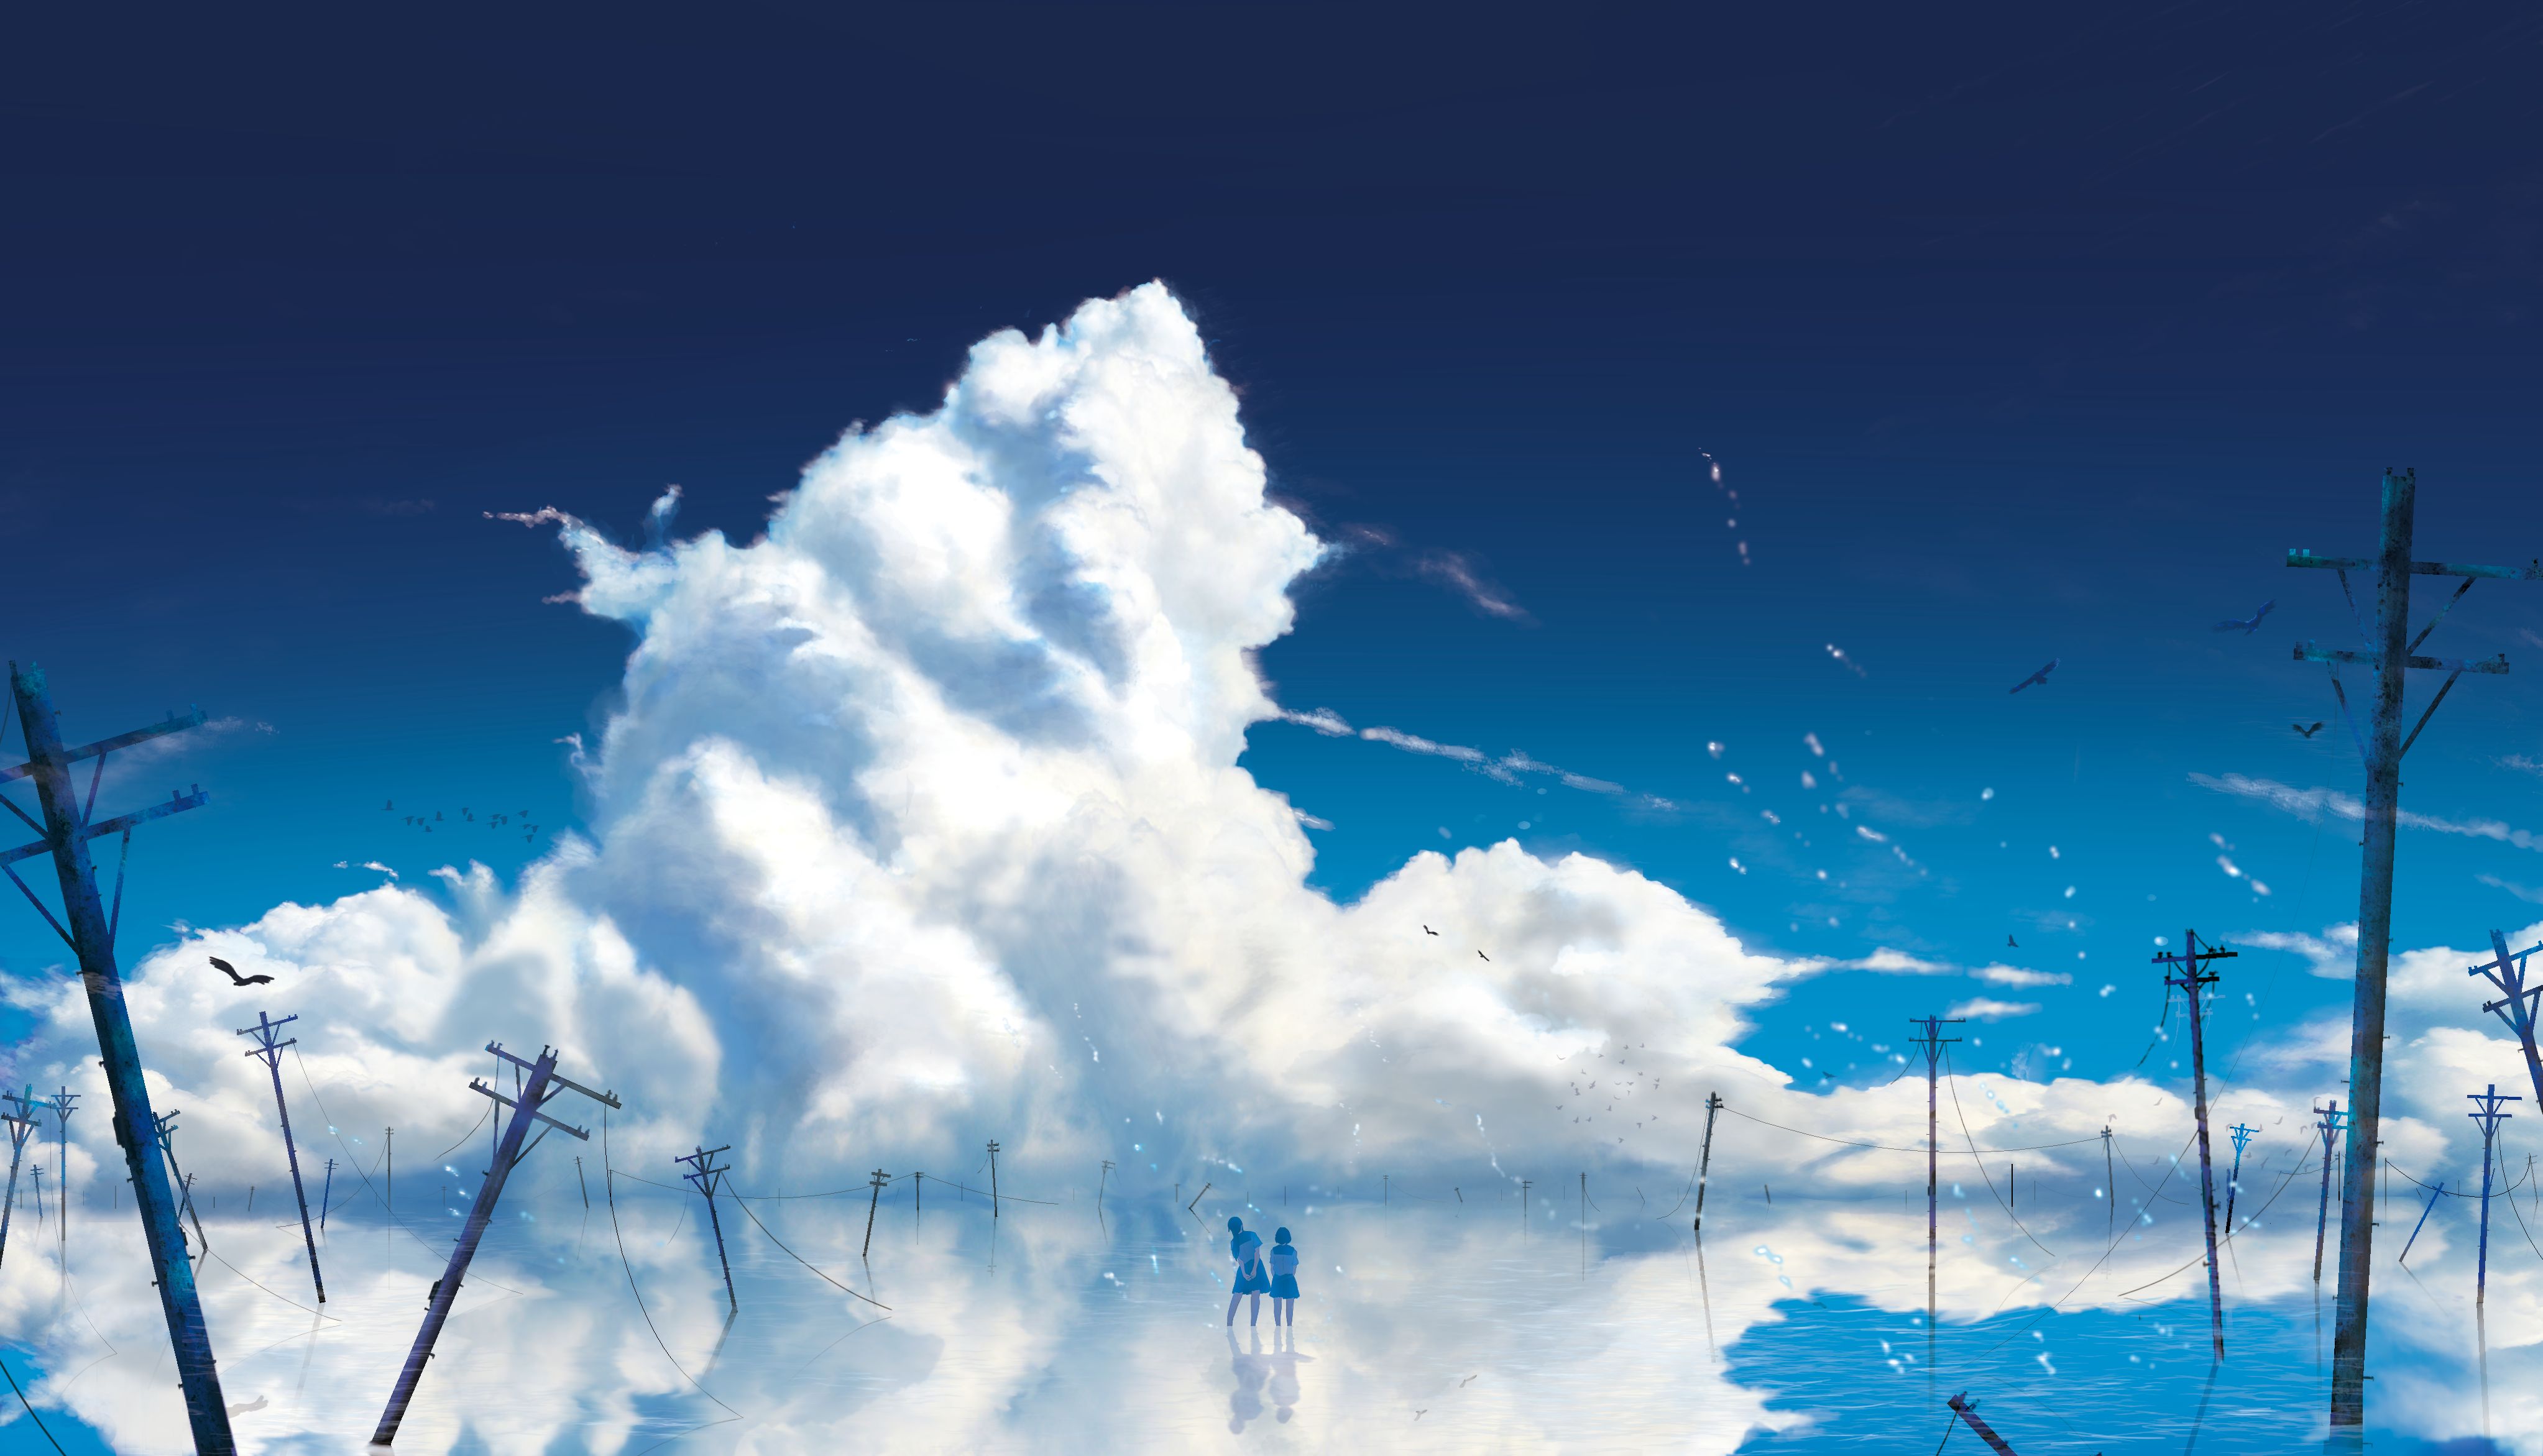 Аниме Макото Синкай за облаками